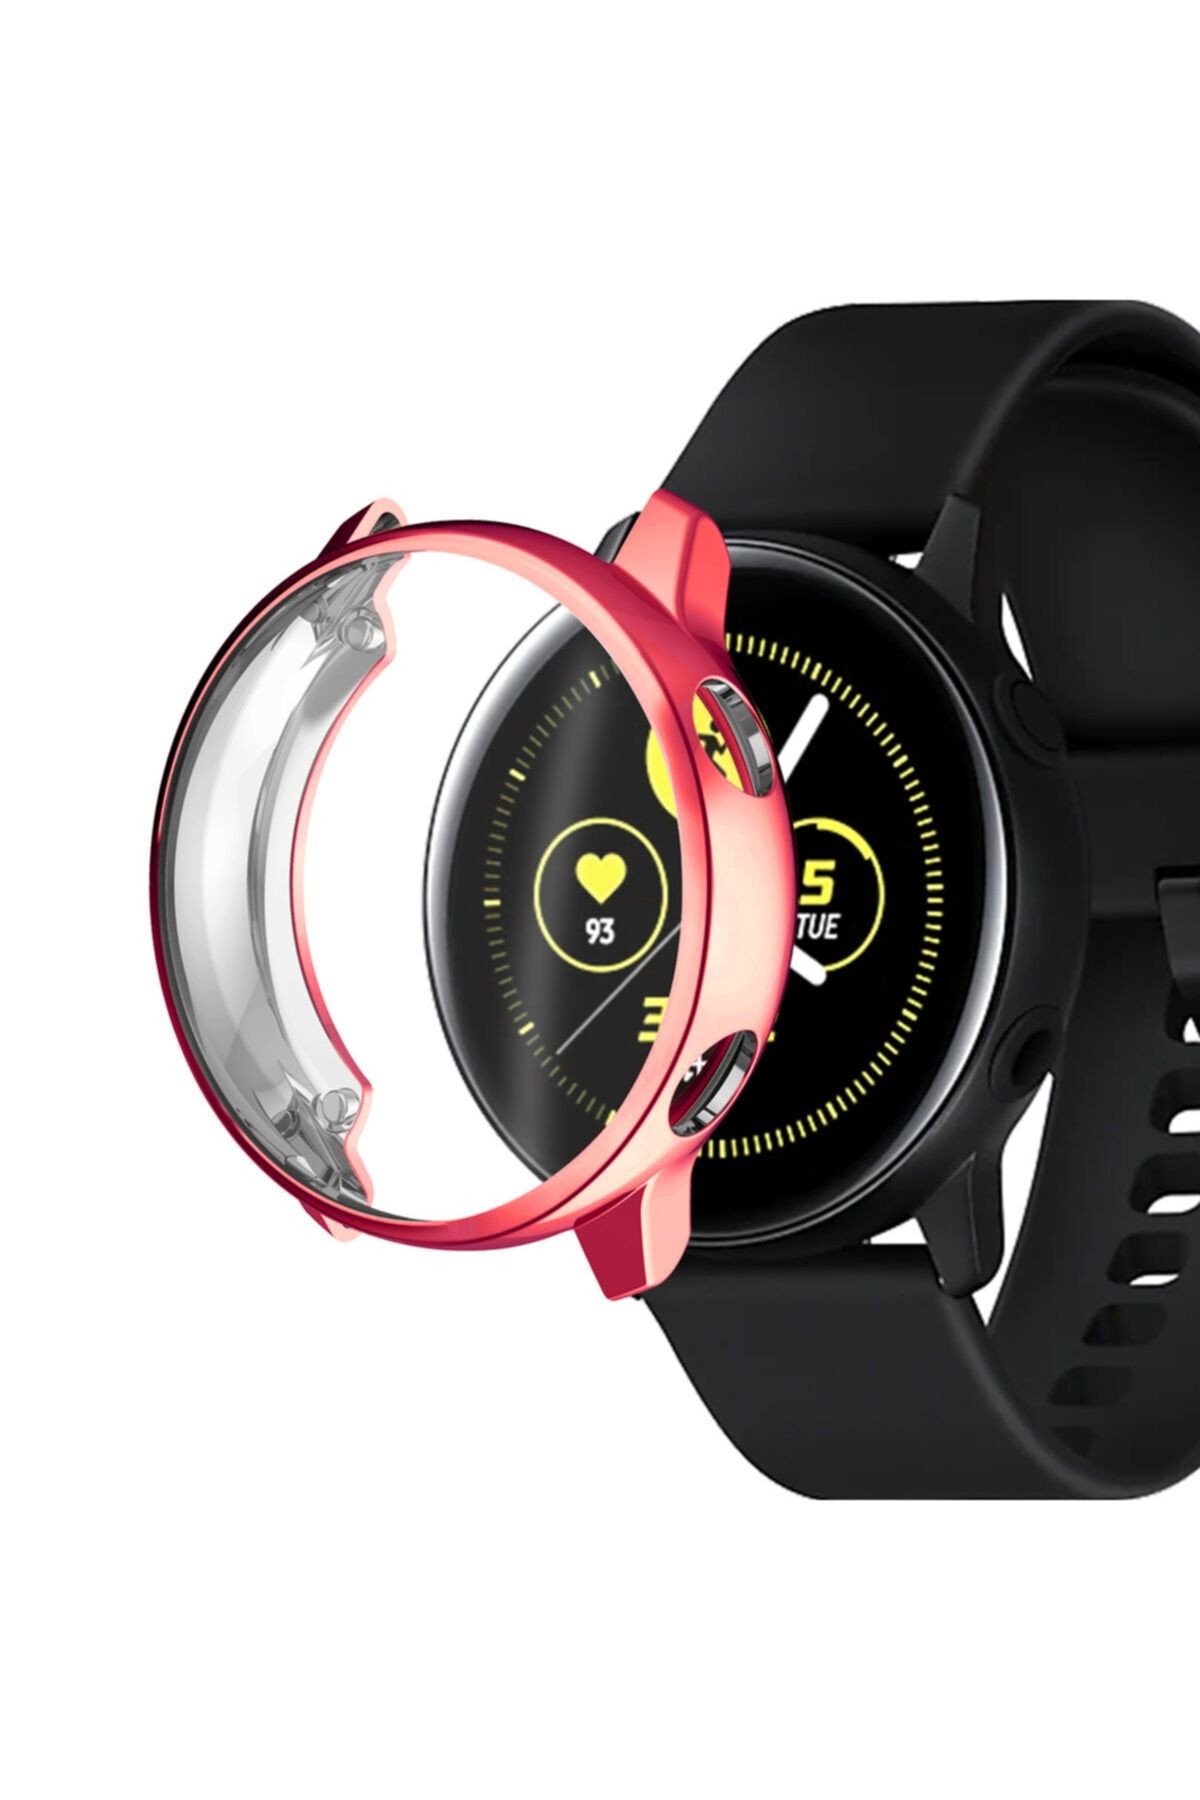 Nezih Case Samsung Watch Galaxy Active 2 44mm 360 Derece Önü Kapalı Silikon Kılıf Kasa Koruyucu